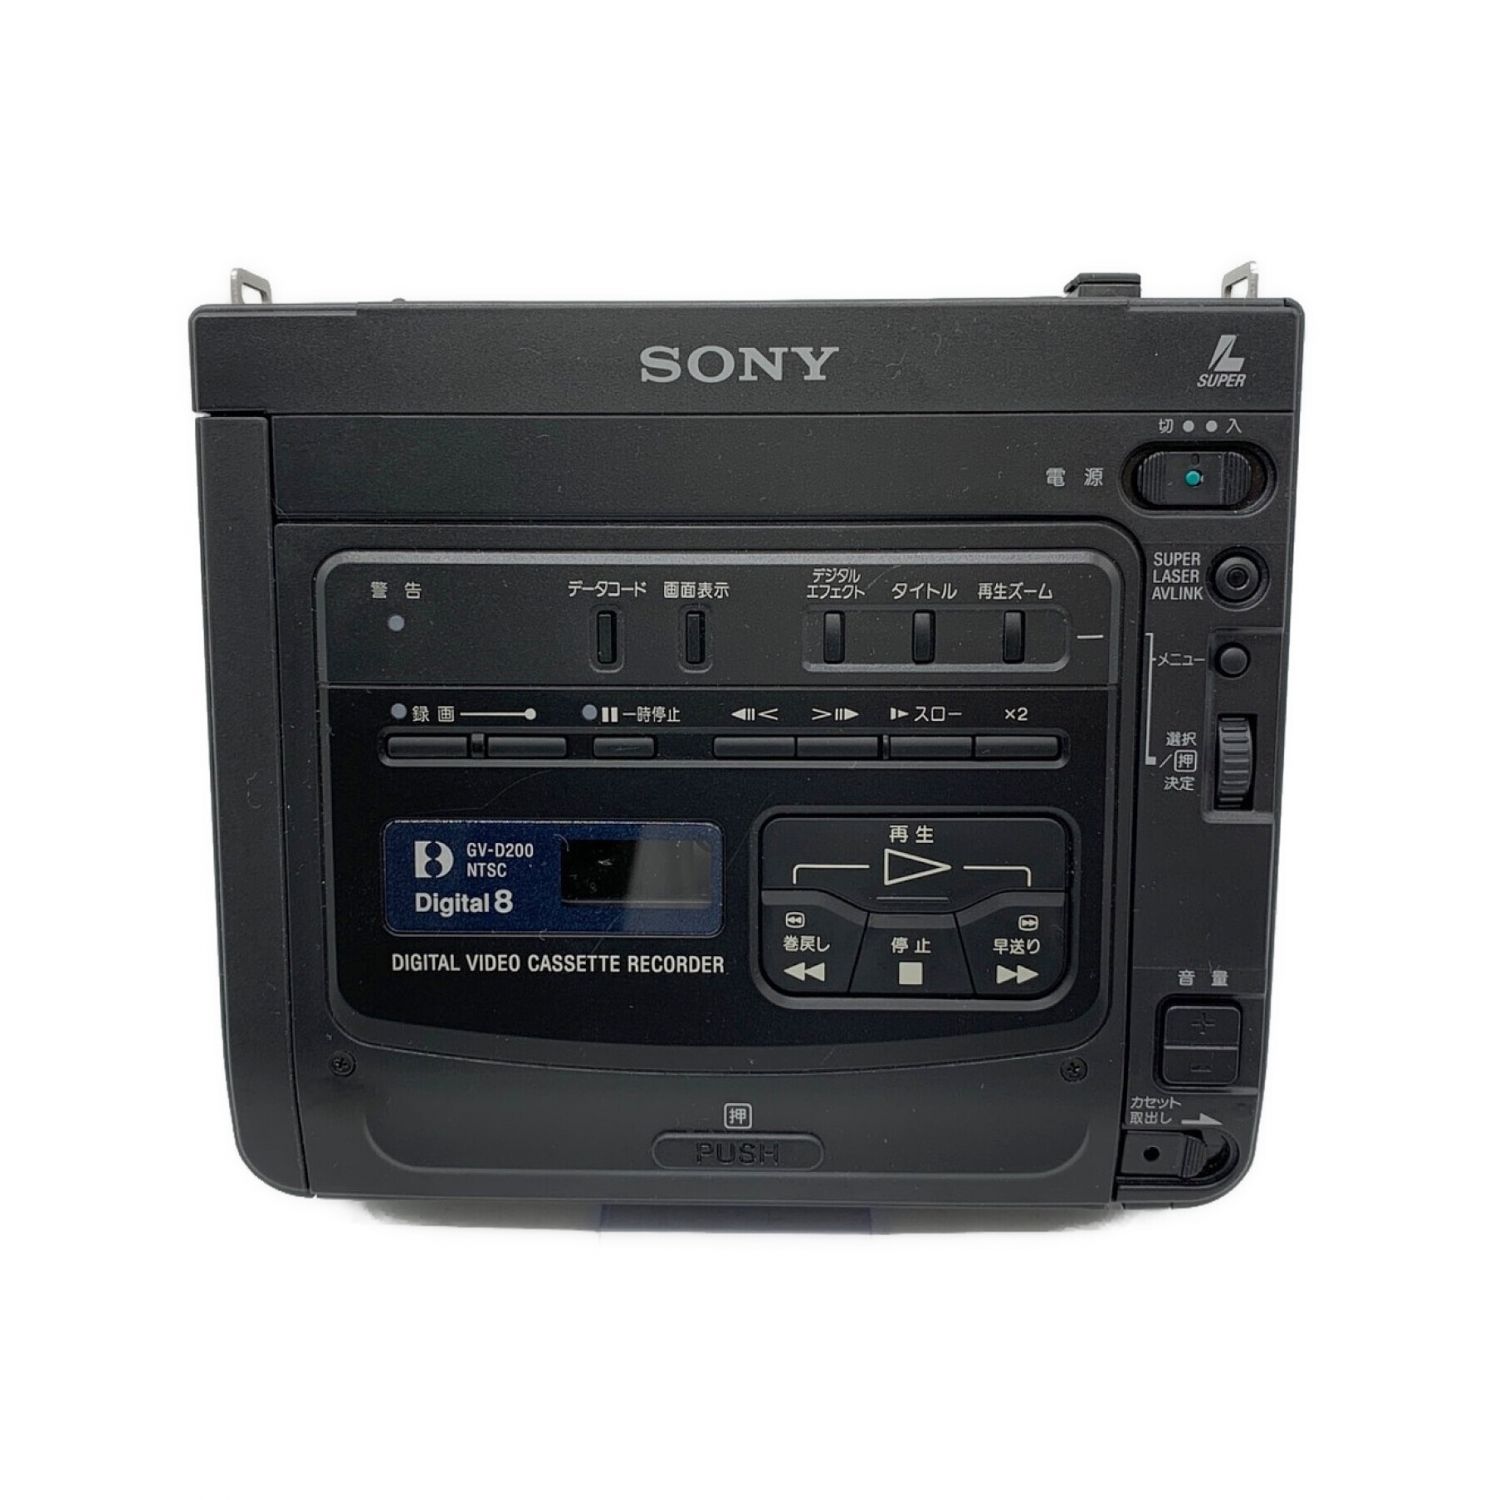 8ミリデジタルビデオカセットレコーダー SONY GV-D200-